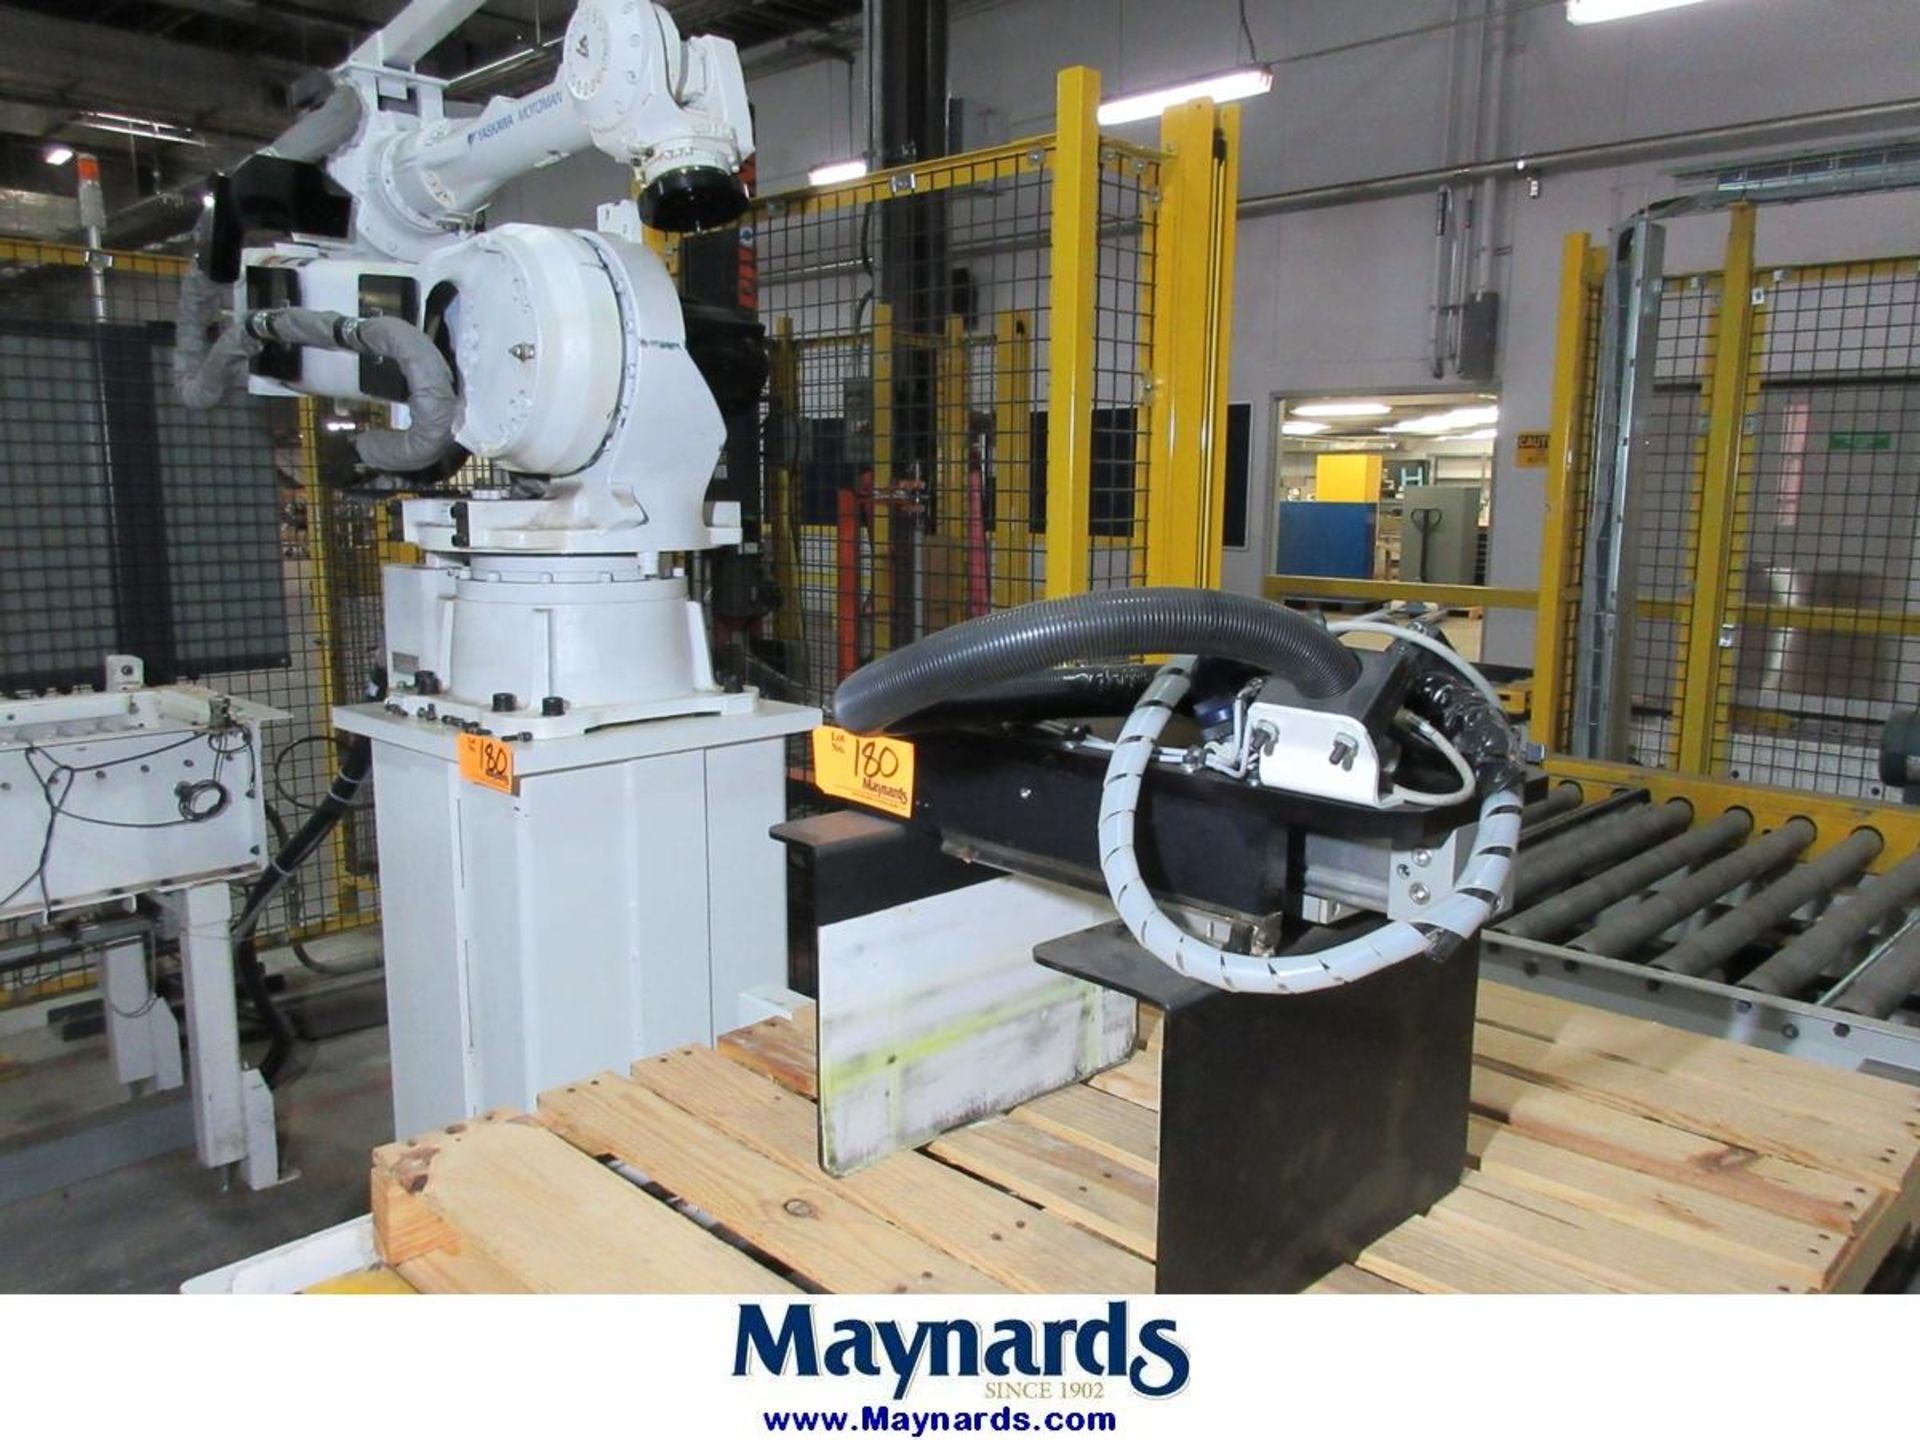 2012 Yaskawa Motoman MPL80 Type YR-MPL0080-A04 Material Handling Robot - Image 3 of 11